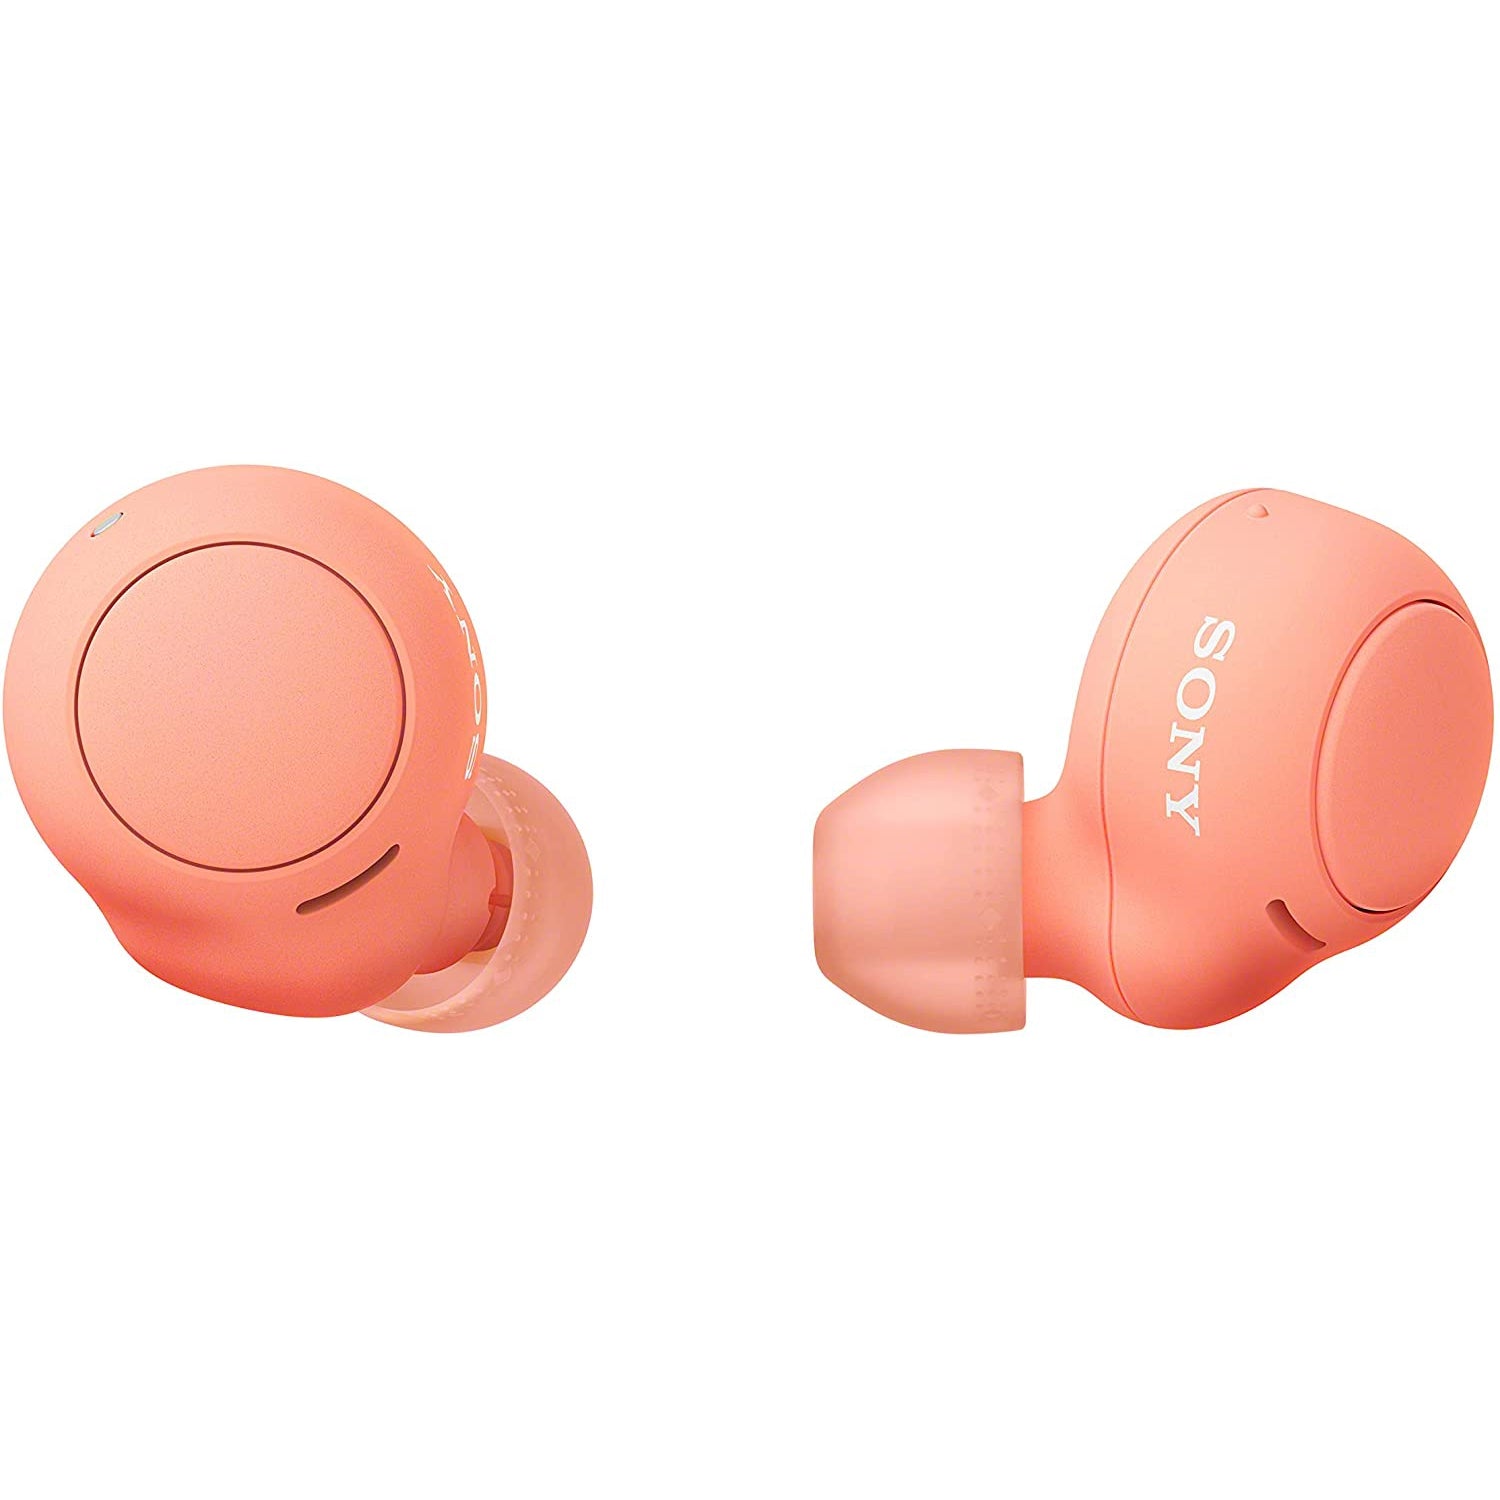 Sony WF-C500 Wireless Earbuds - Orange - Refurbished Pristine